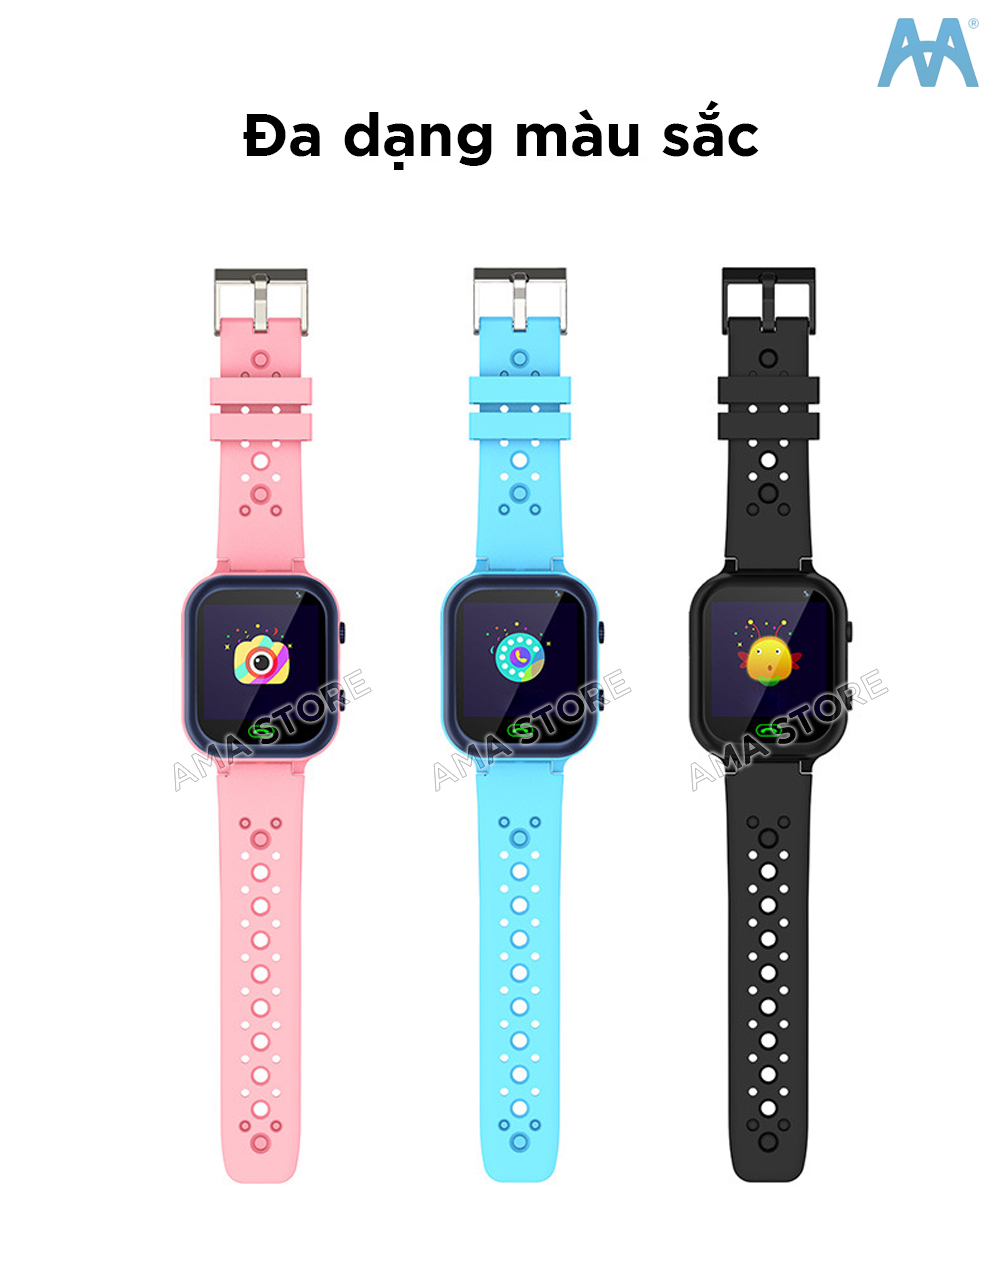 Đồng hồ Thông minh Trẻ em AMA Watch Q15 lắp SIM nghe gọi 2 chiều 3 màu Xanh Hồng Đen Hàng chinh hãng